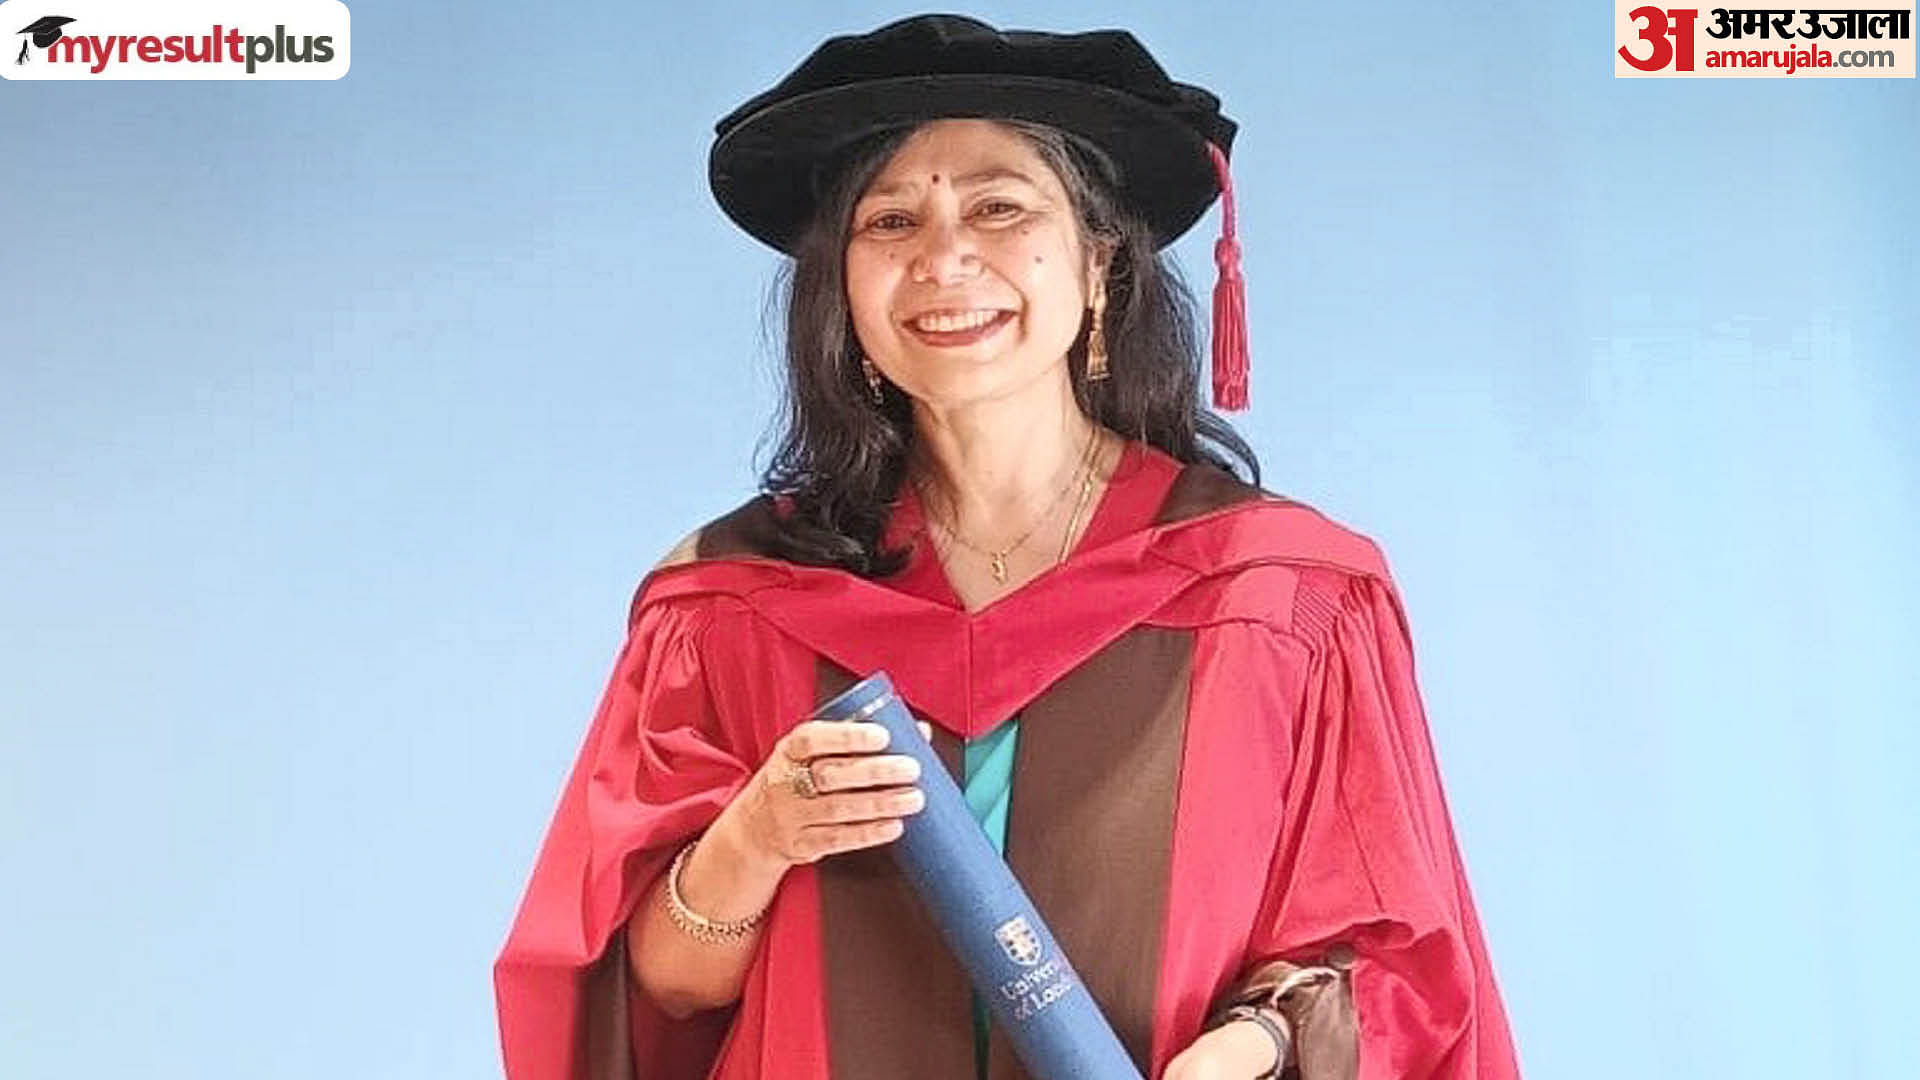 British-Indian author Shrabani Basu conferred honorary doctorate by University of London: PTI